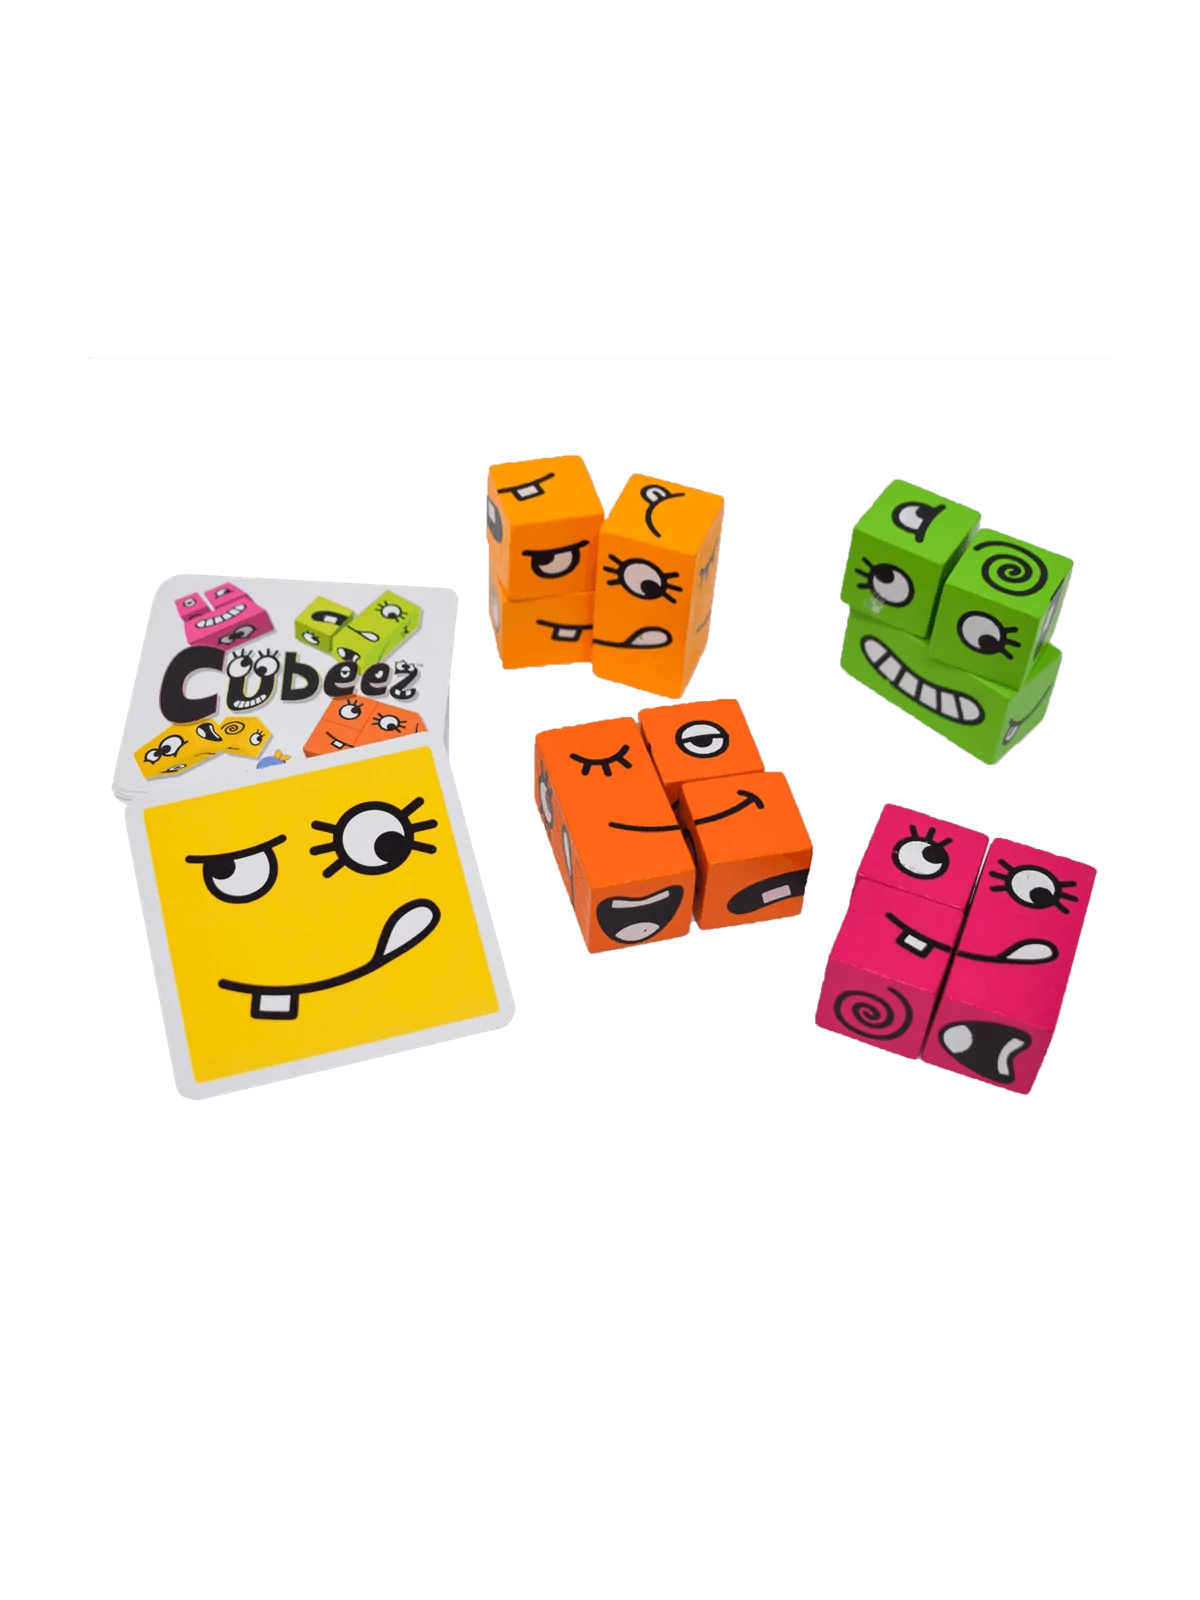 Comprar Cubeez barato al mejor precio 16,19 € de Blue Orange Games